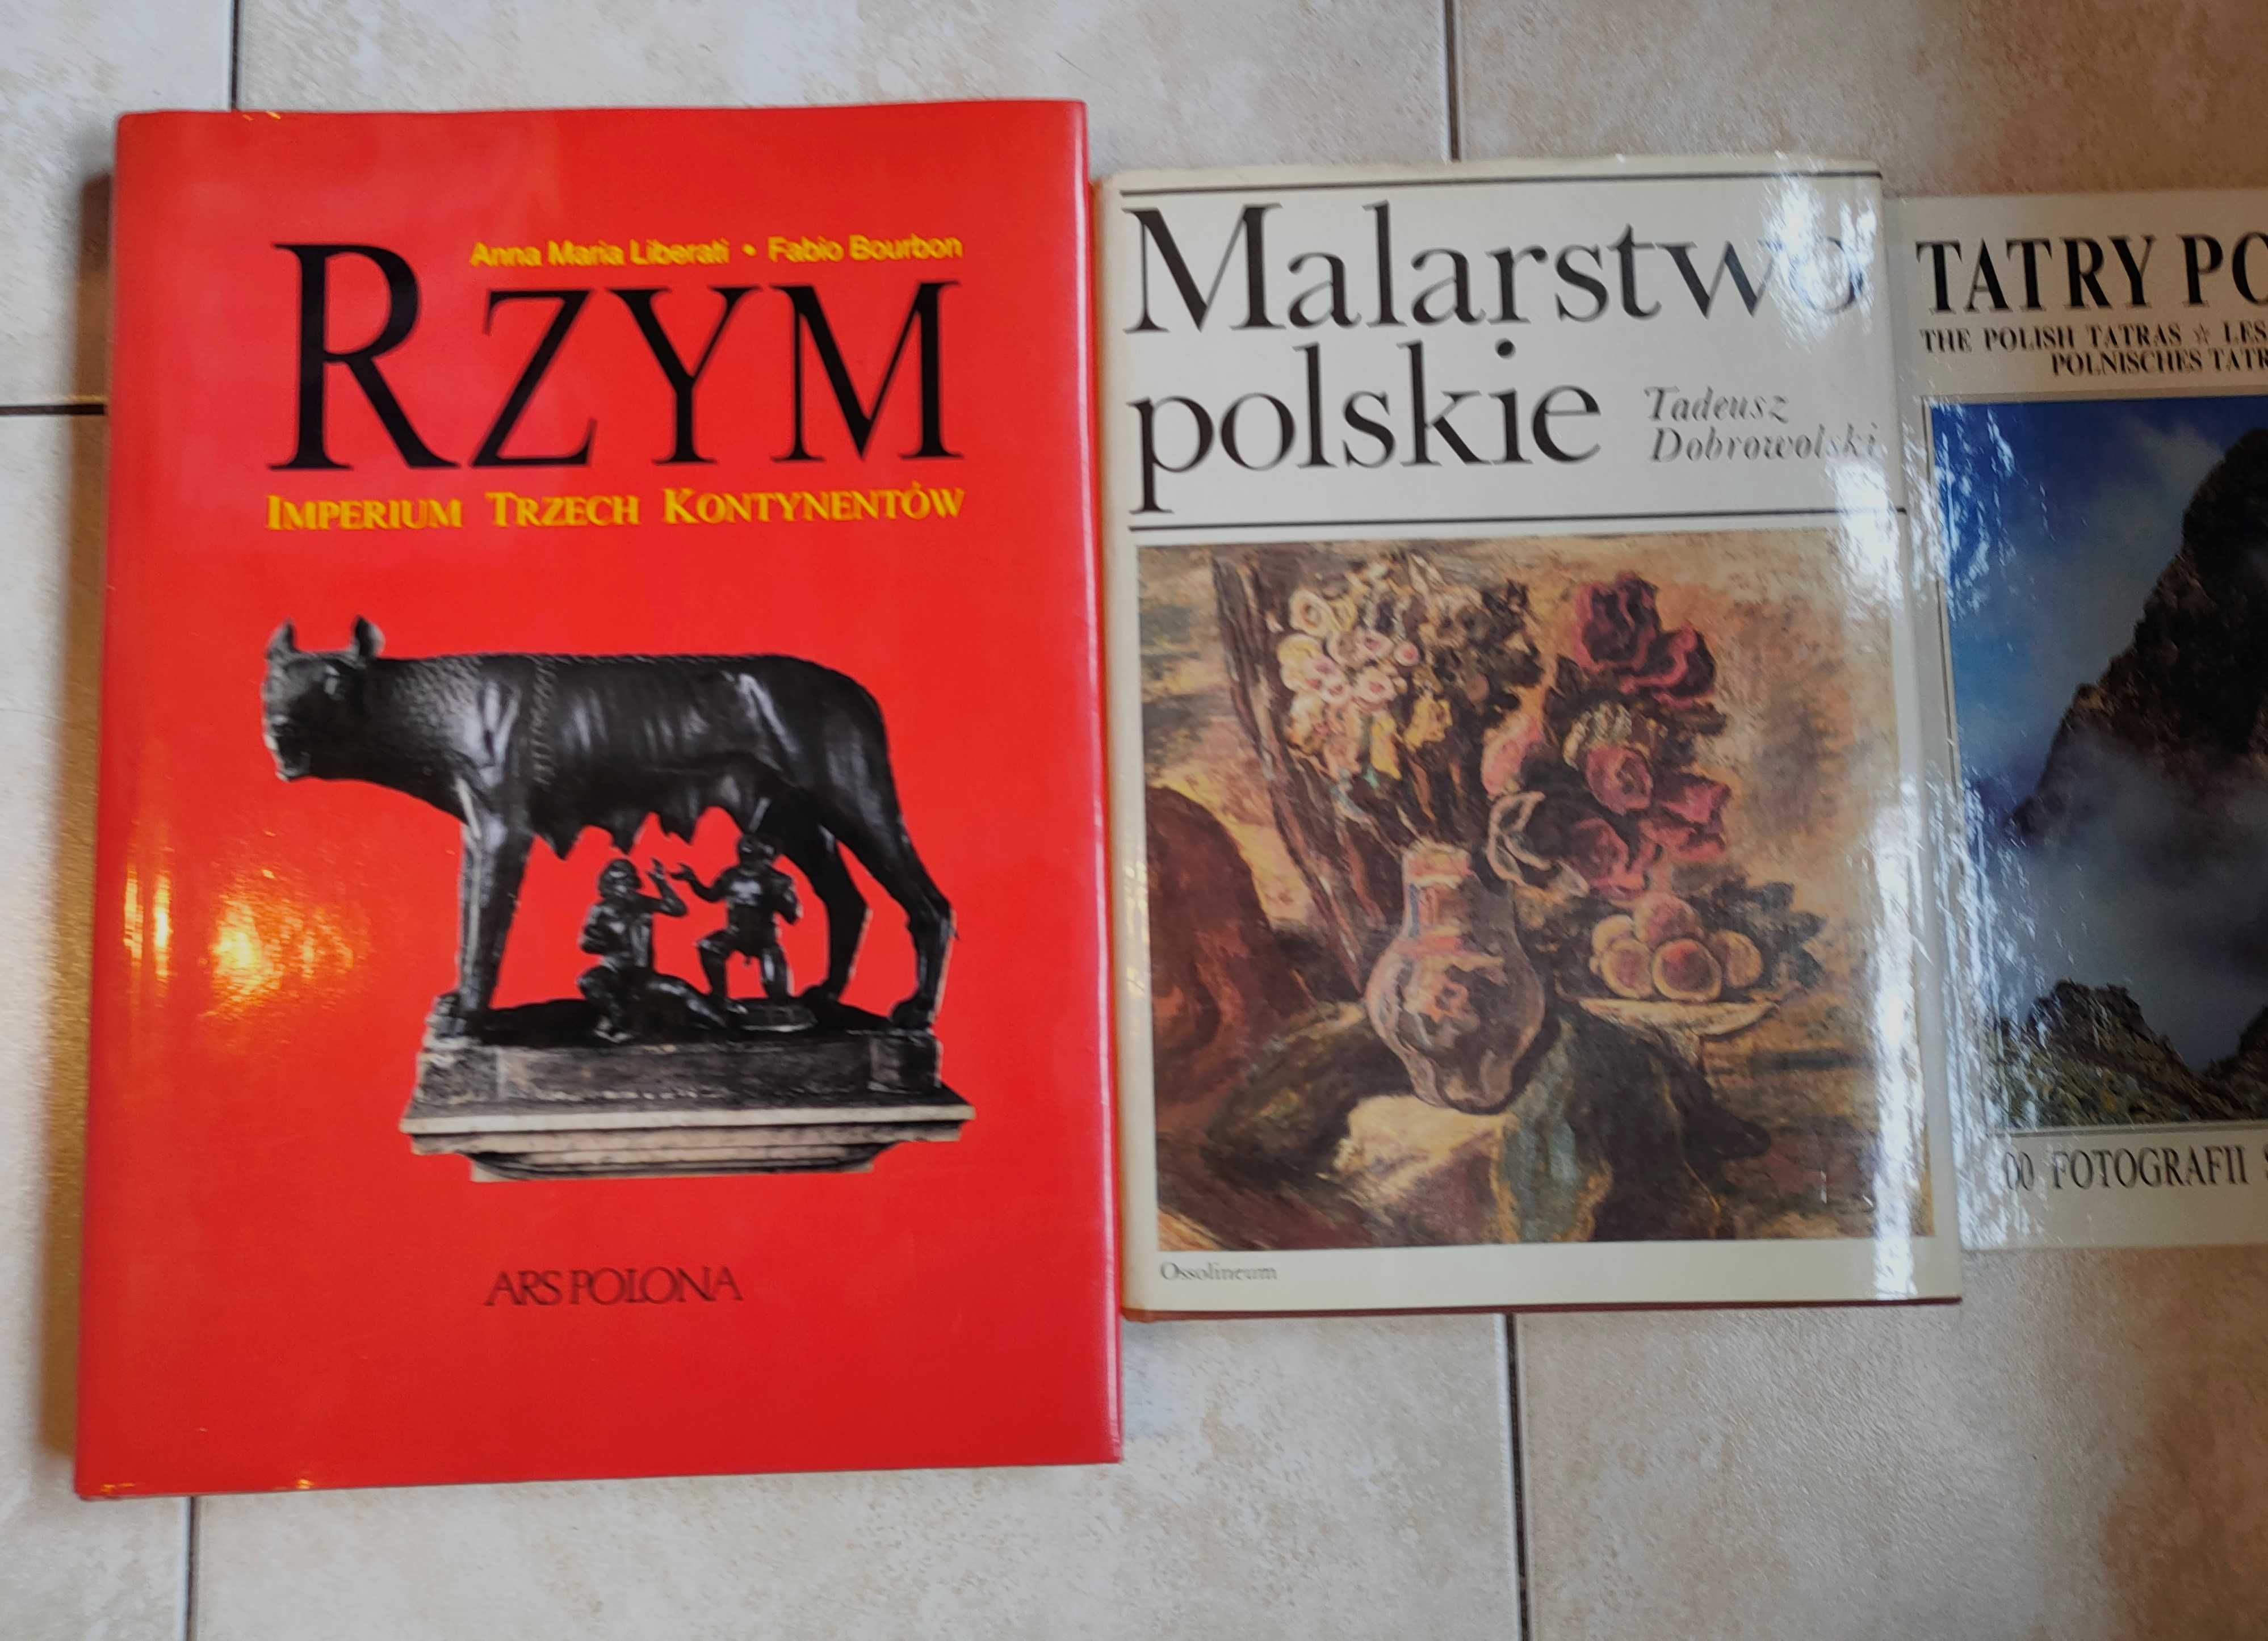 Albumy RZYM Malarstwo Polskie Tatry Polskie